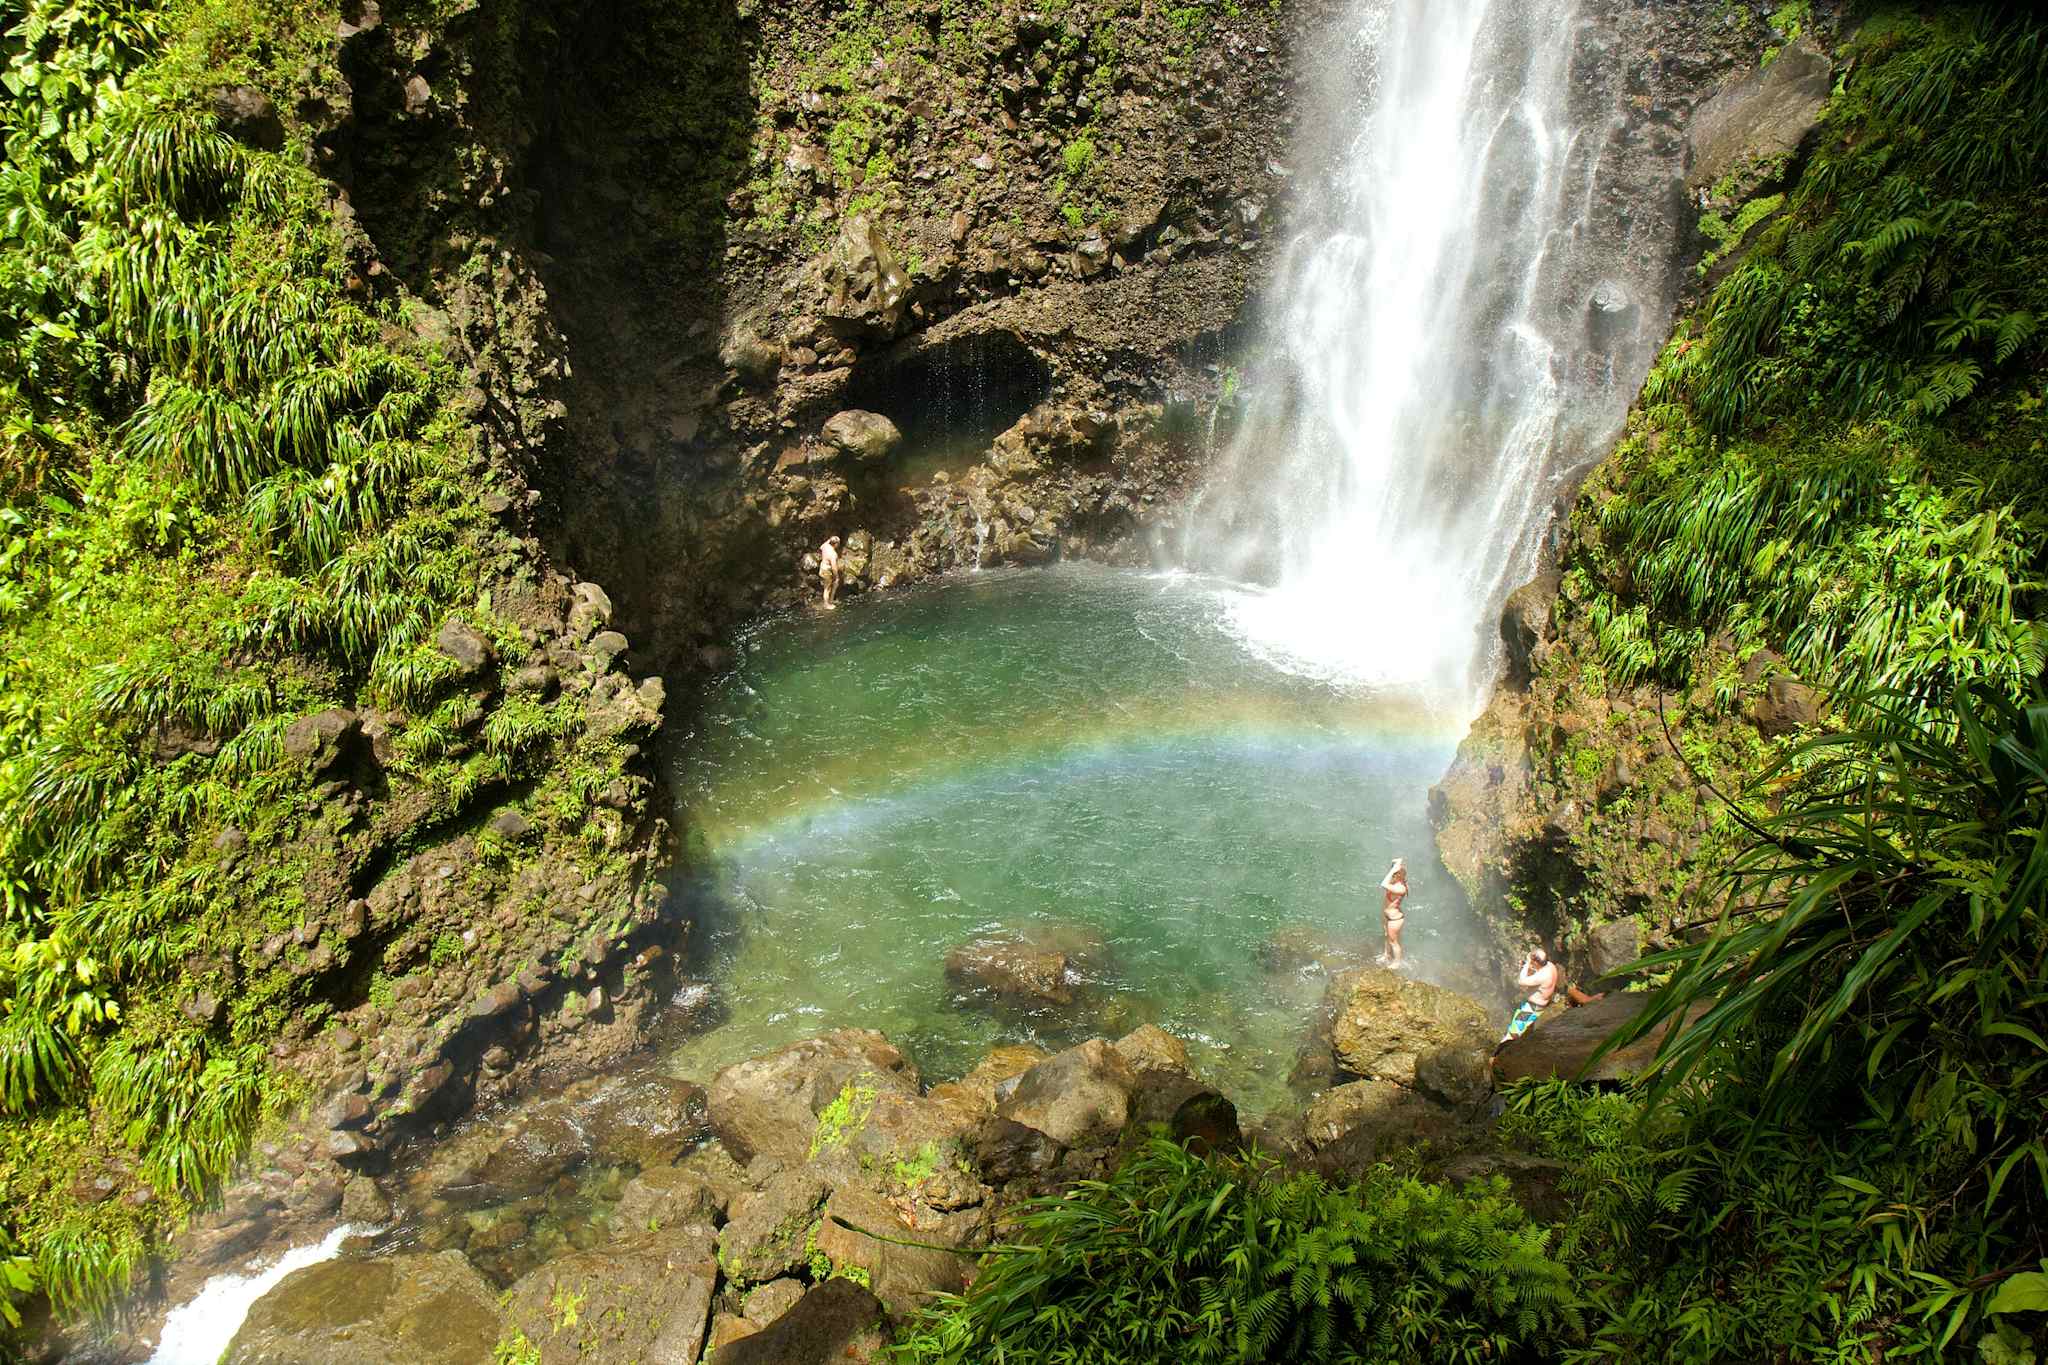 Middleham Falls, Dominica
Dreamstime photo - ID 45393647 © Irishka777 